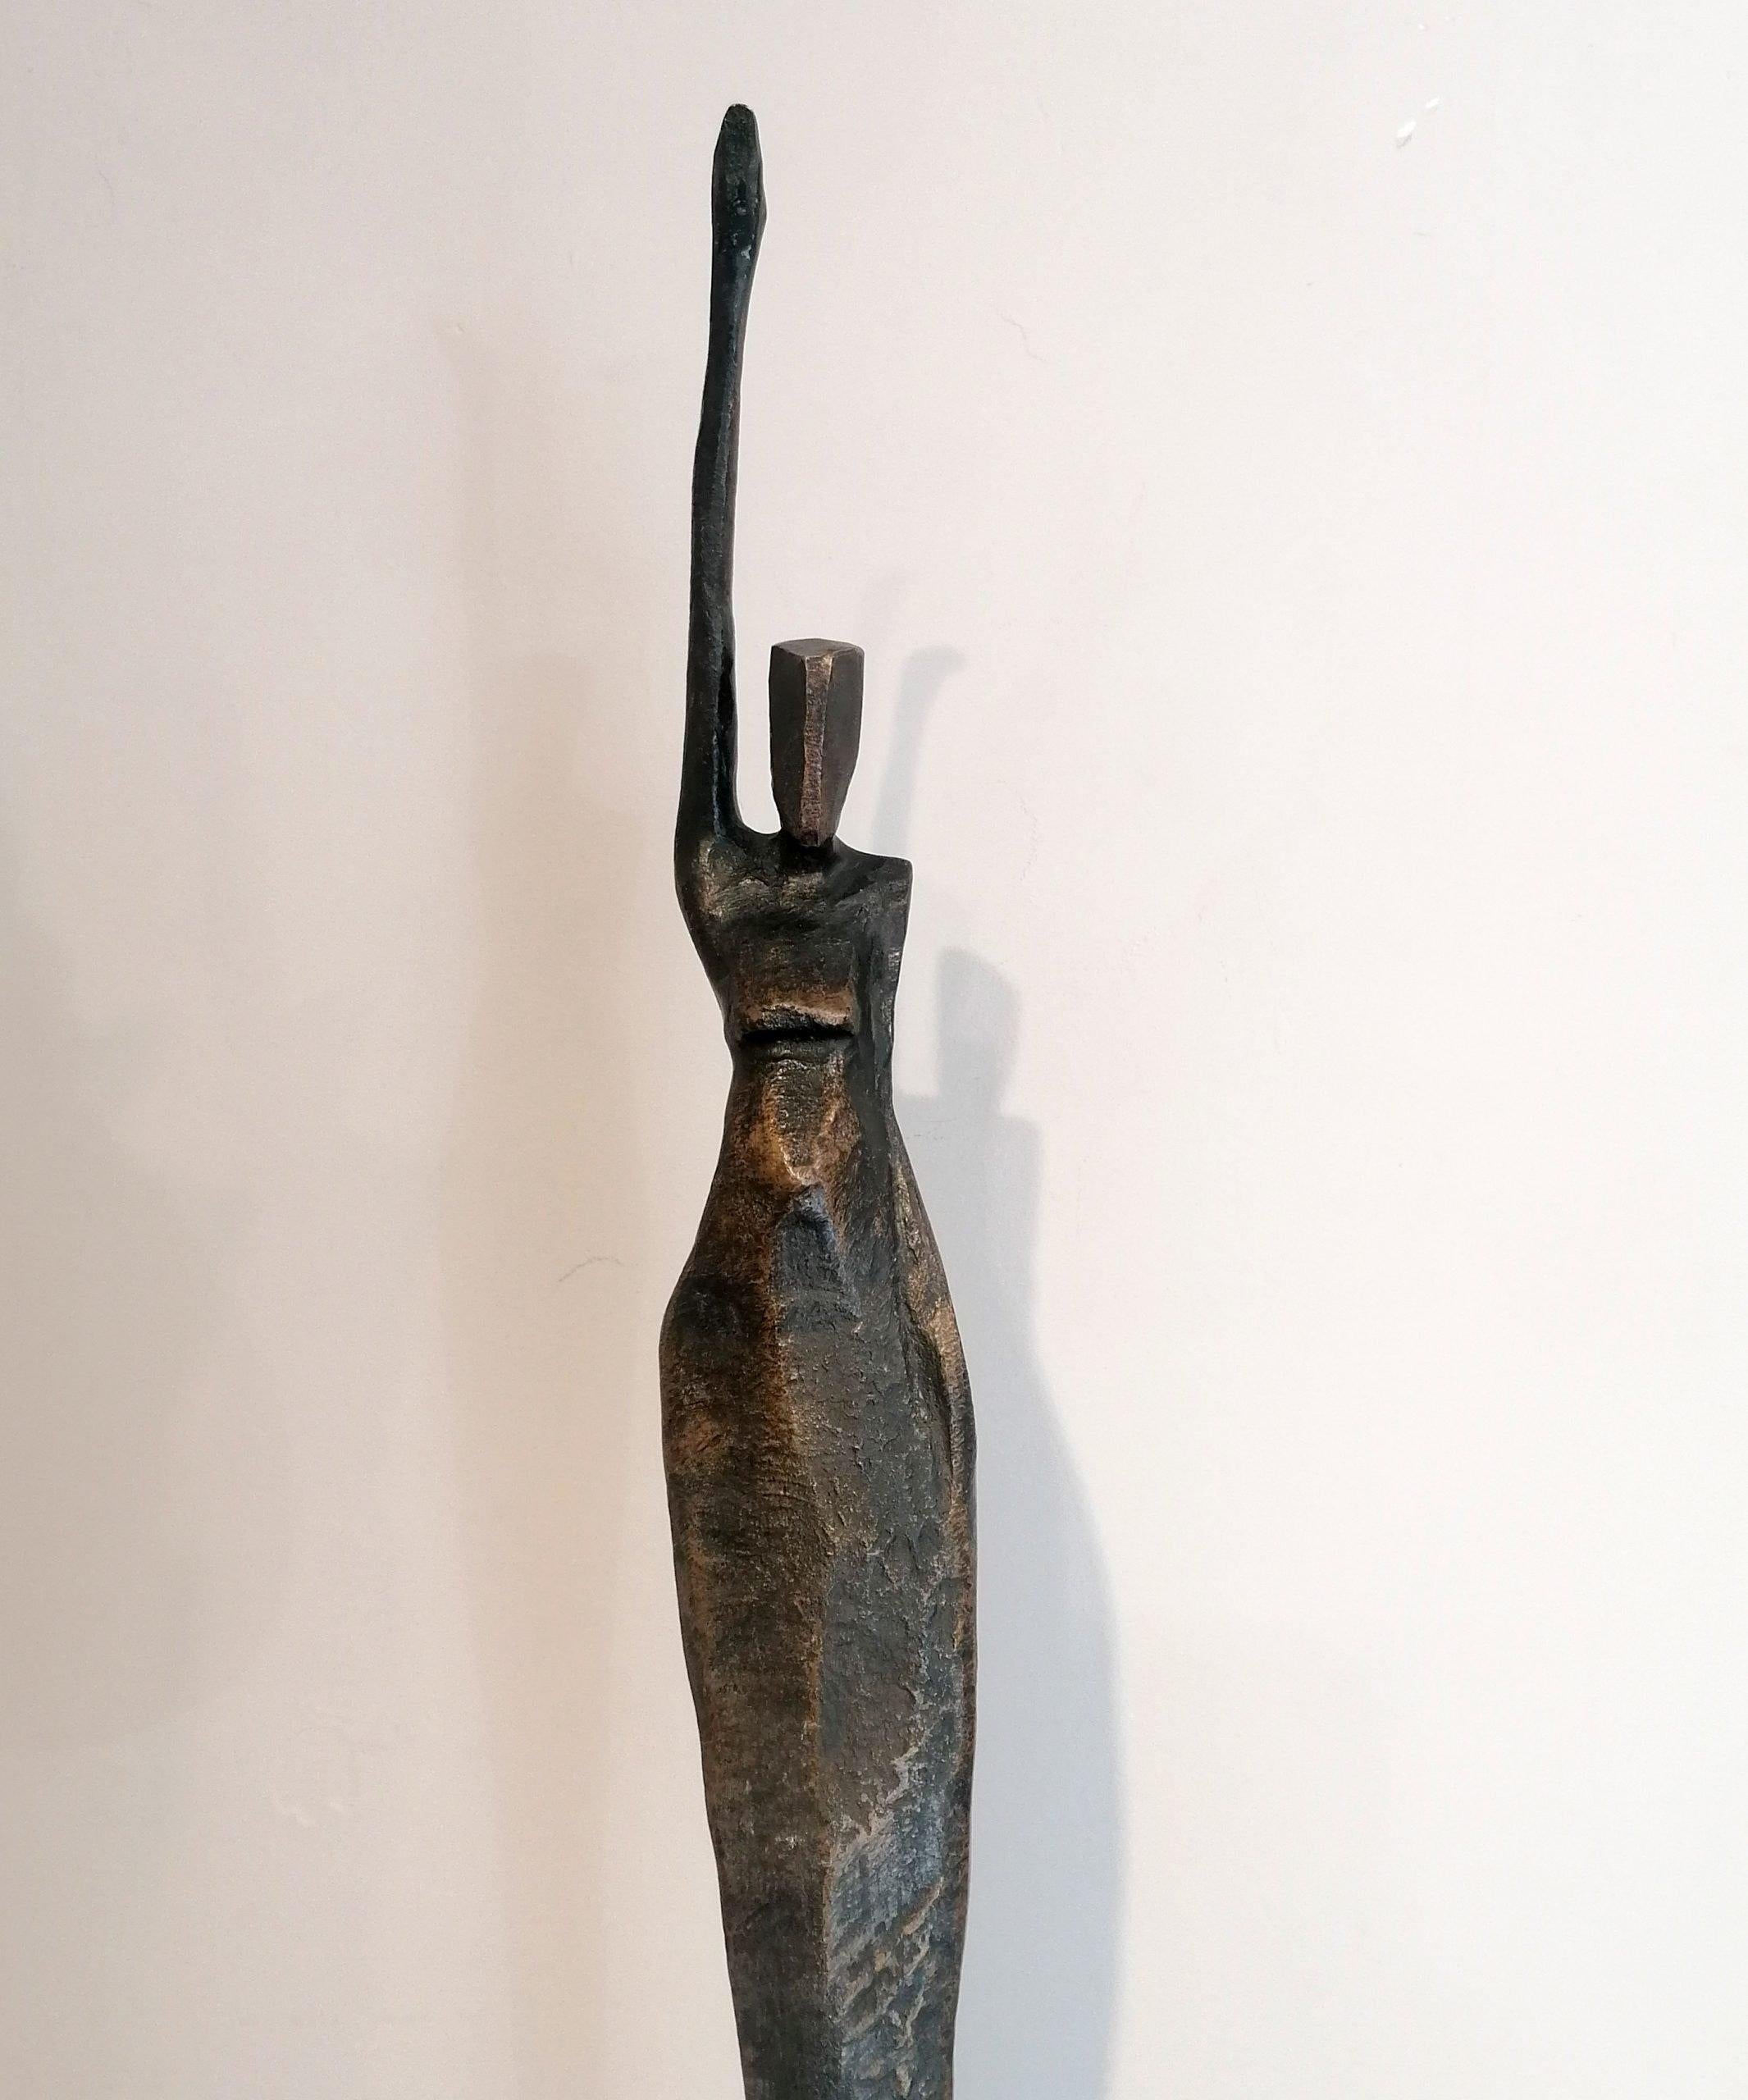 Madeleine von Nando Kallweit.  
Bronzeskulptur, Auflage: 7

Abmessungen: 153cm hoch